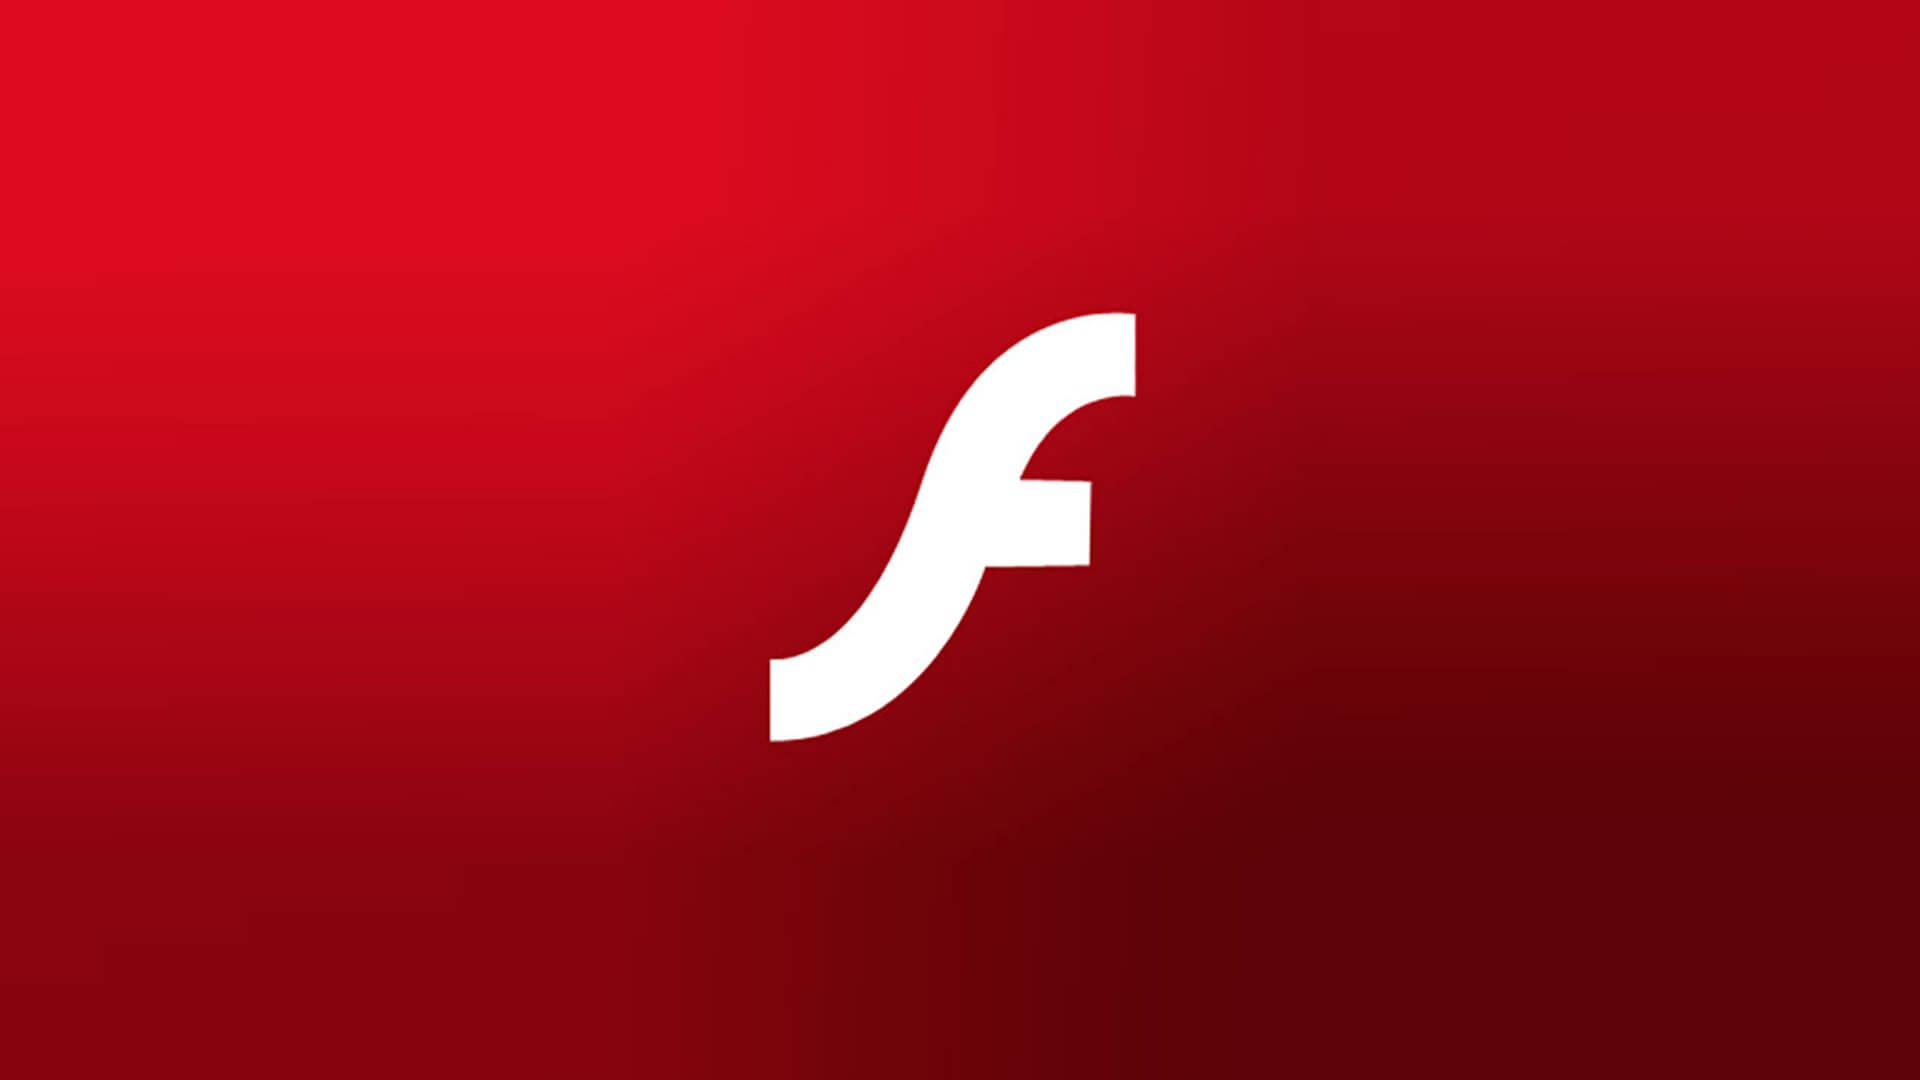 Jak włączyć Flash w przeglądarce Chrome 76 i nowszych